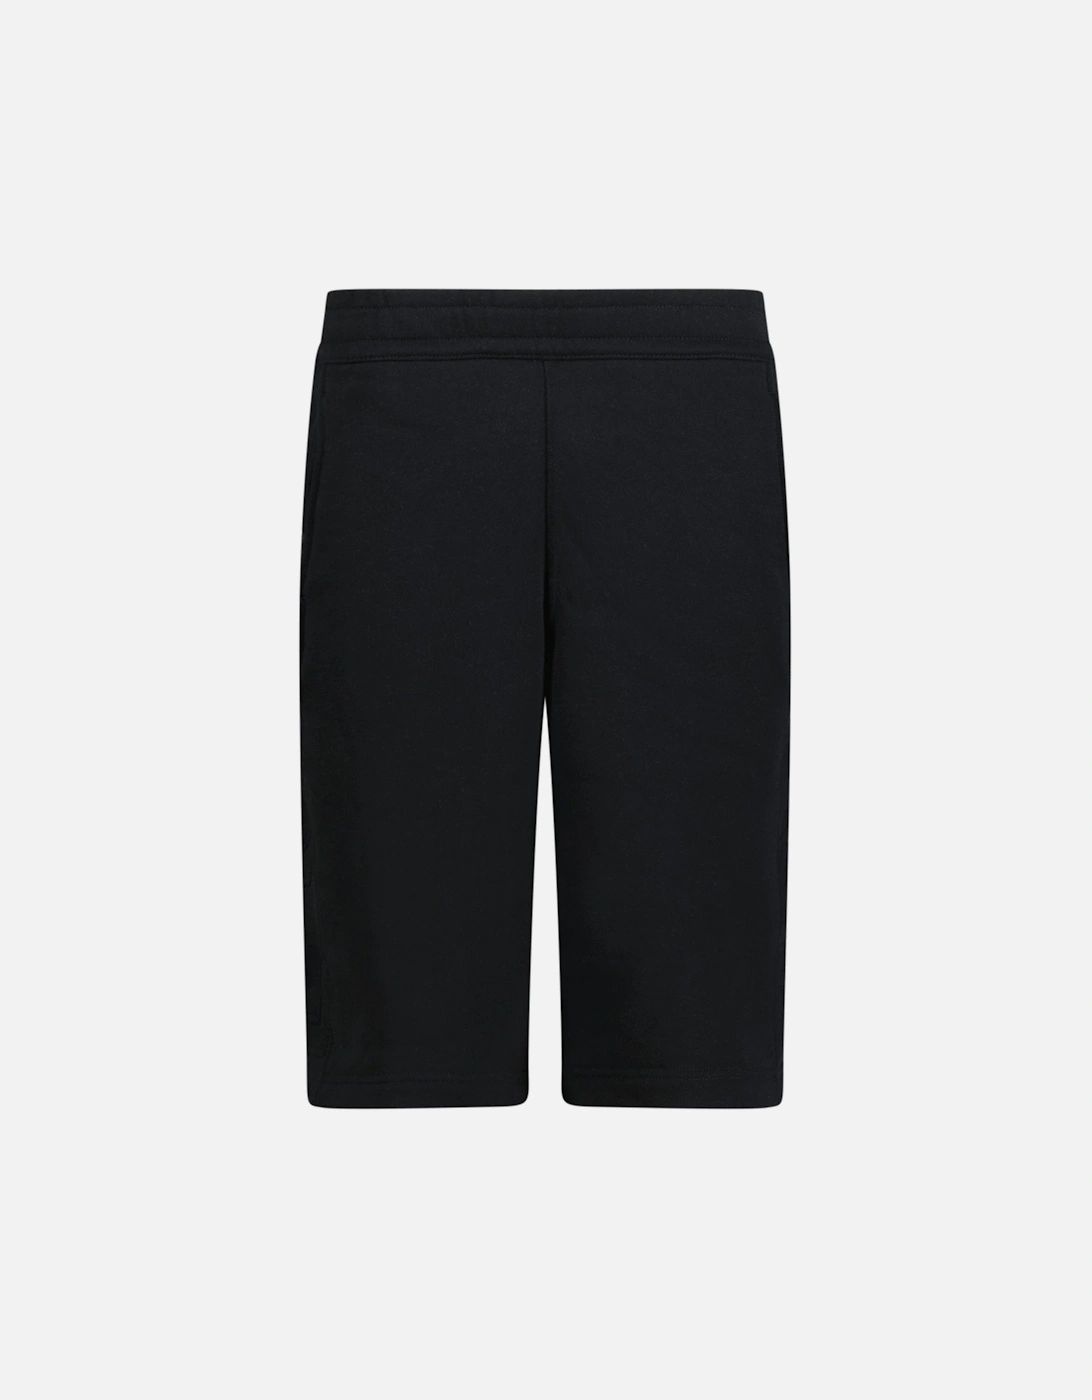 'Phelix' Cotton Shorts Black, 3 of 2